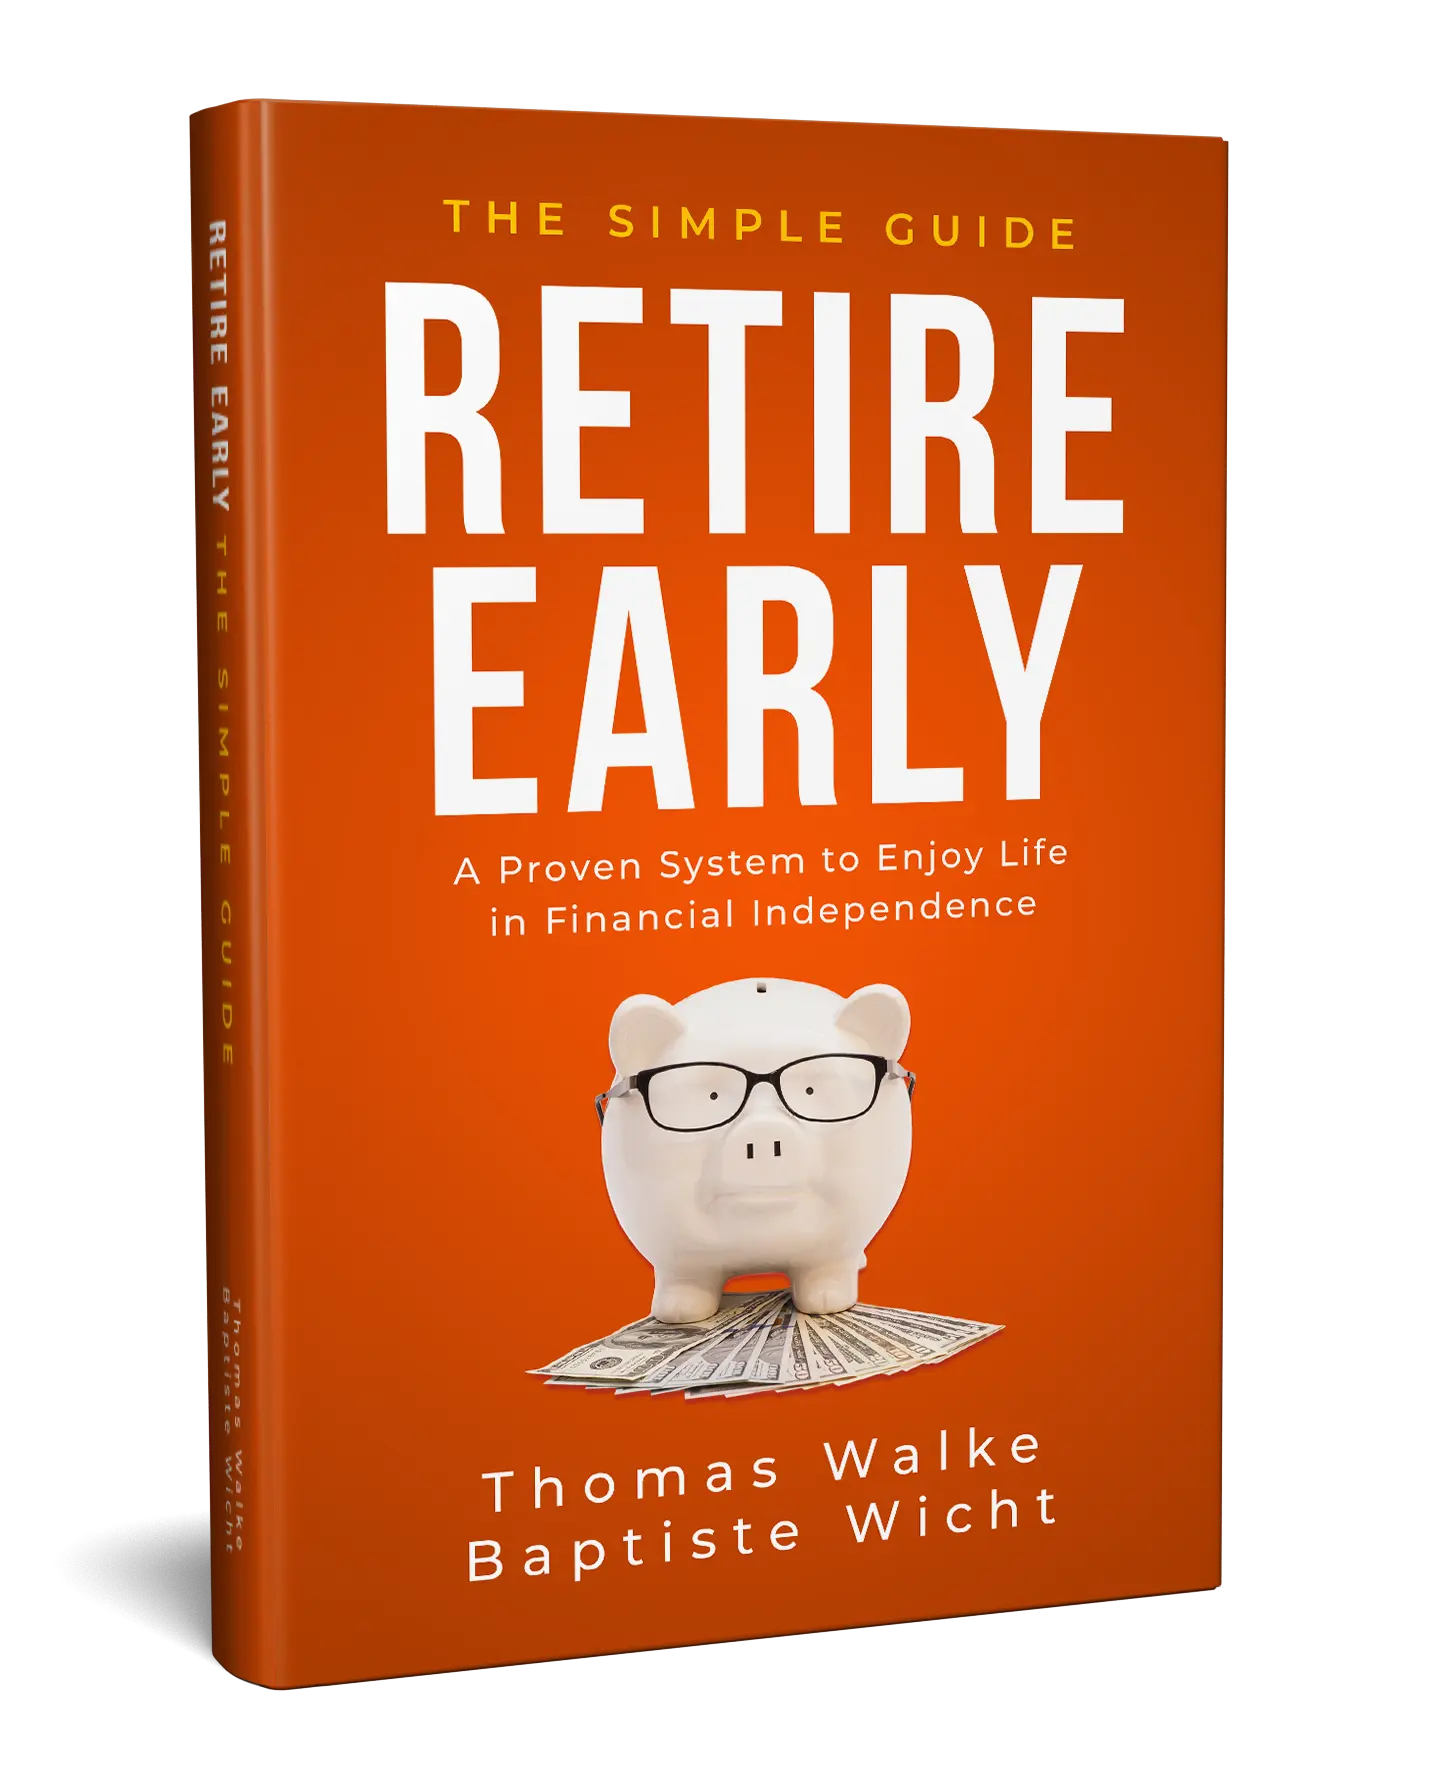 Retire-Early-The-Simple-Guide_PrivateFinanzen-